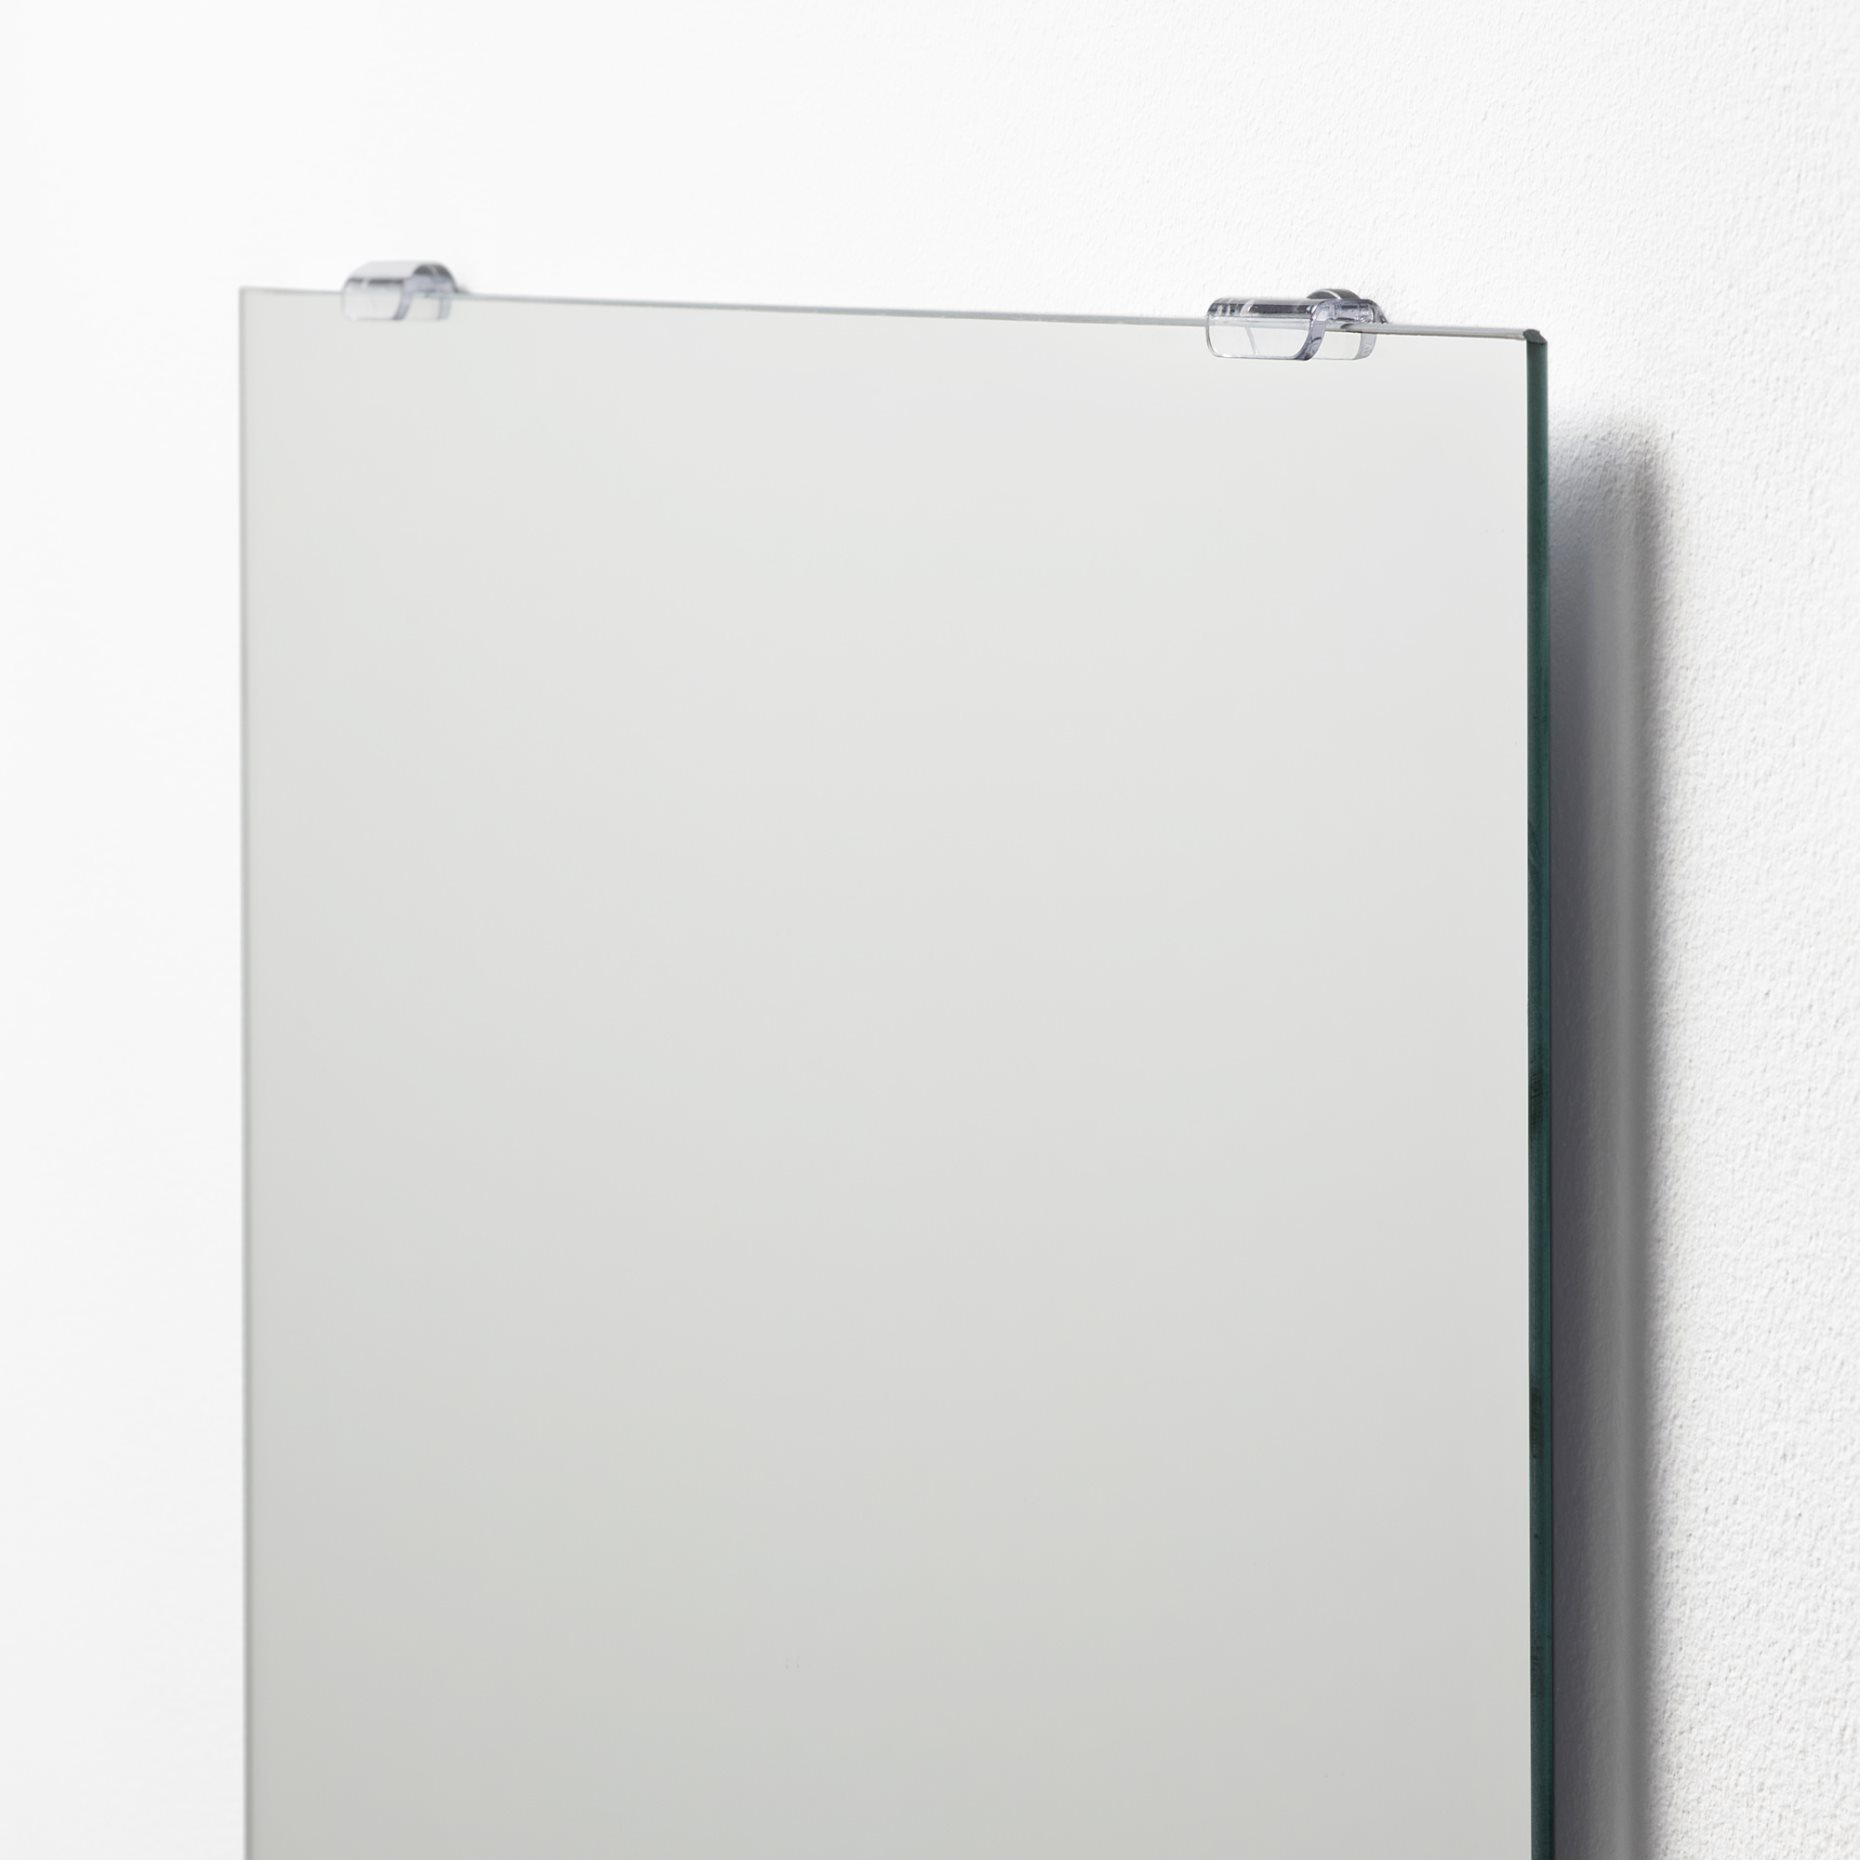 LÄRBRO, καθρέφτης, 48x60 cm, 704.449.56